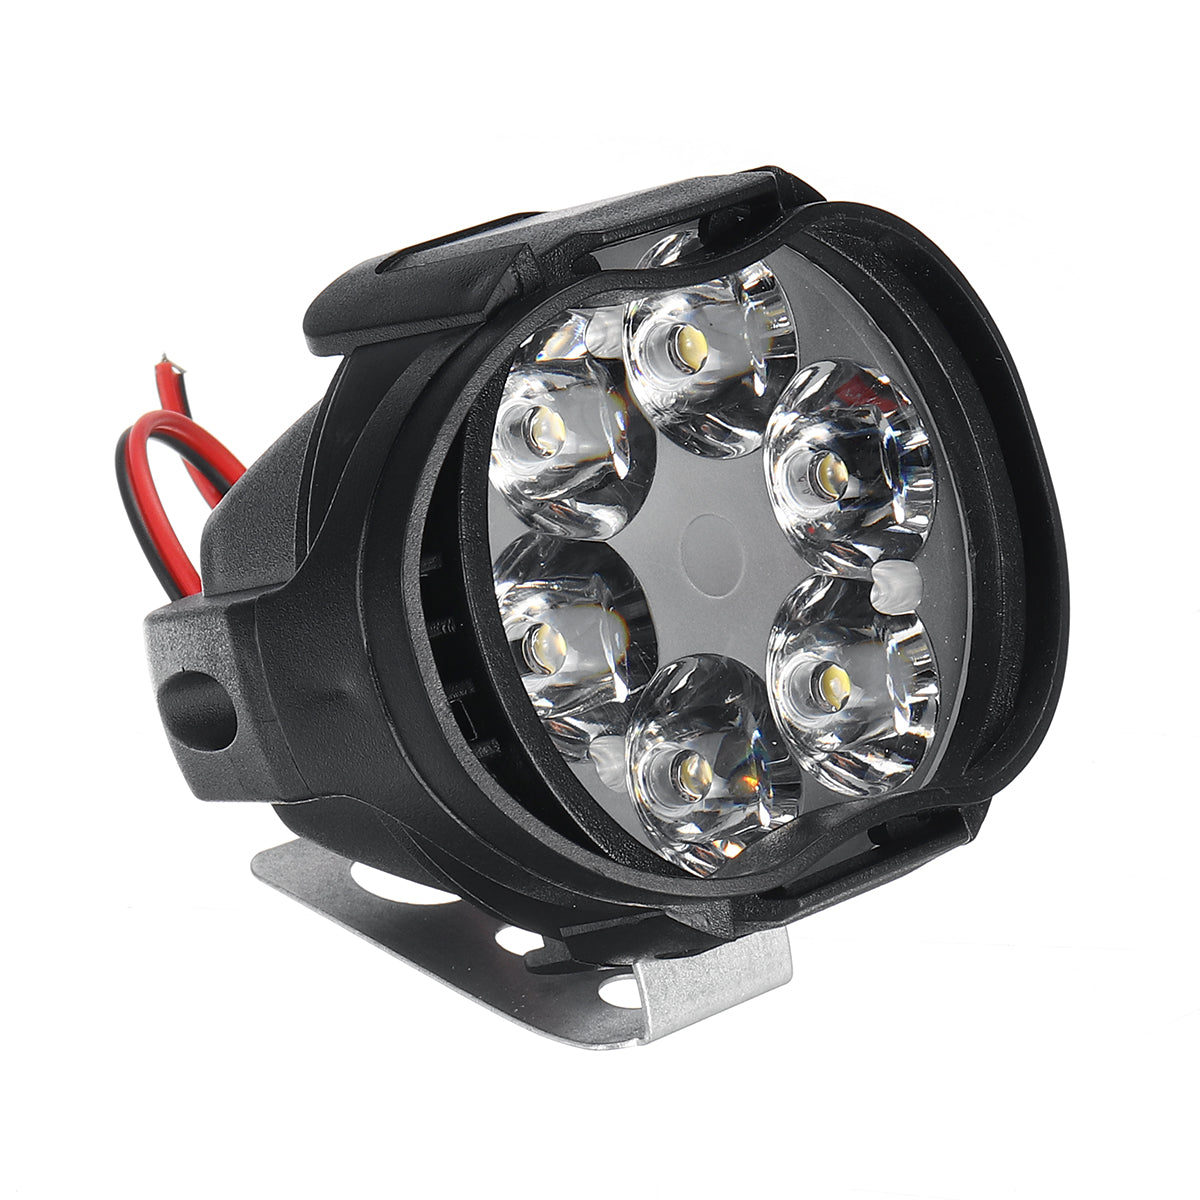 Dark Slate Gray 12V 8W 6LED Motorcycle Motorbike Front Spot LED Light Headlights Lamp